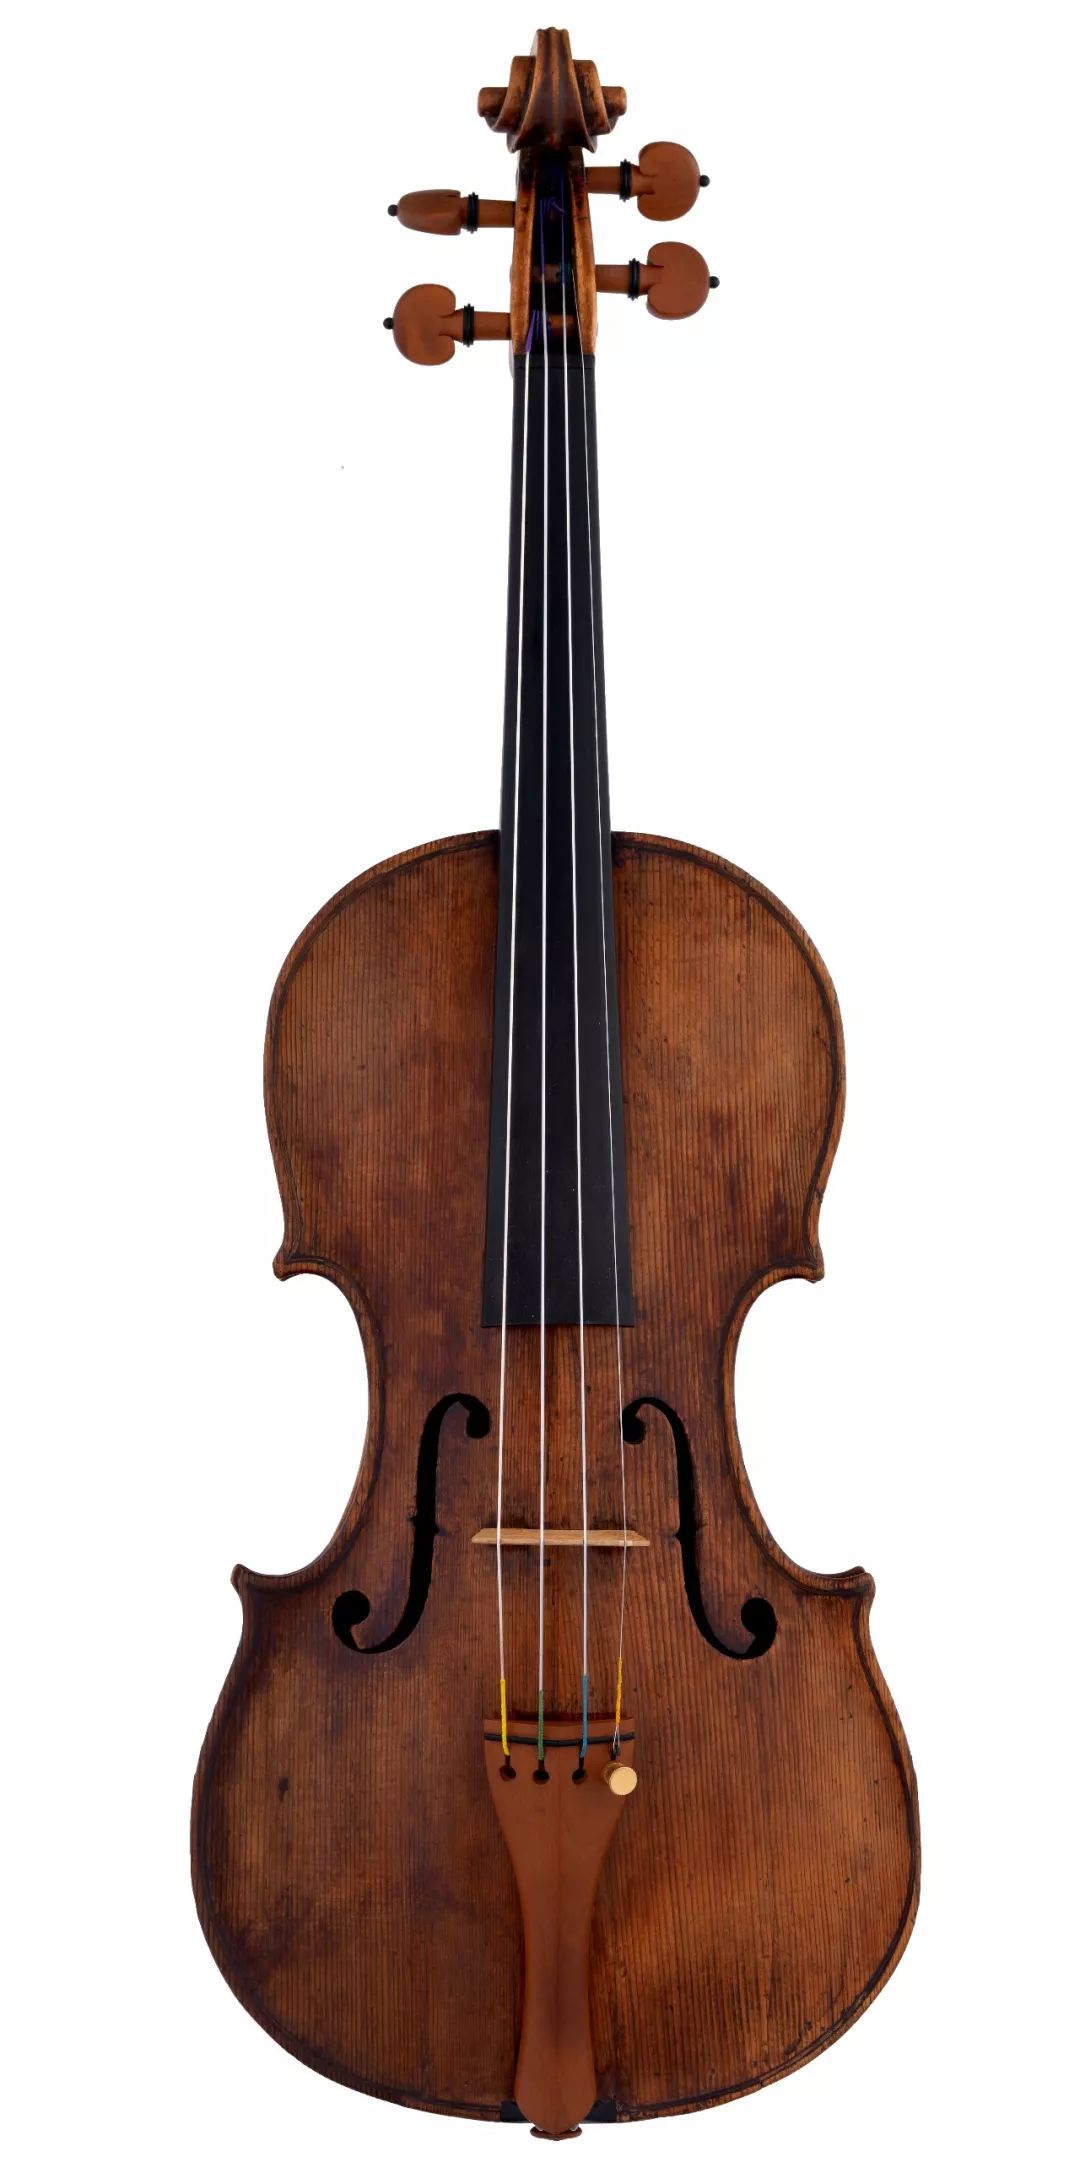 1690 琴头 图为安东尼奥·卡西尼小提琴 约1690年.